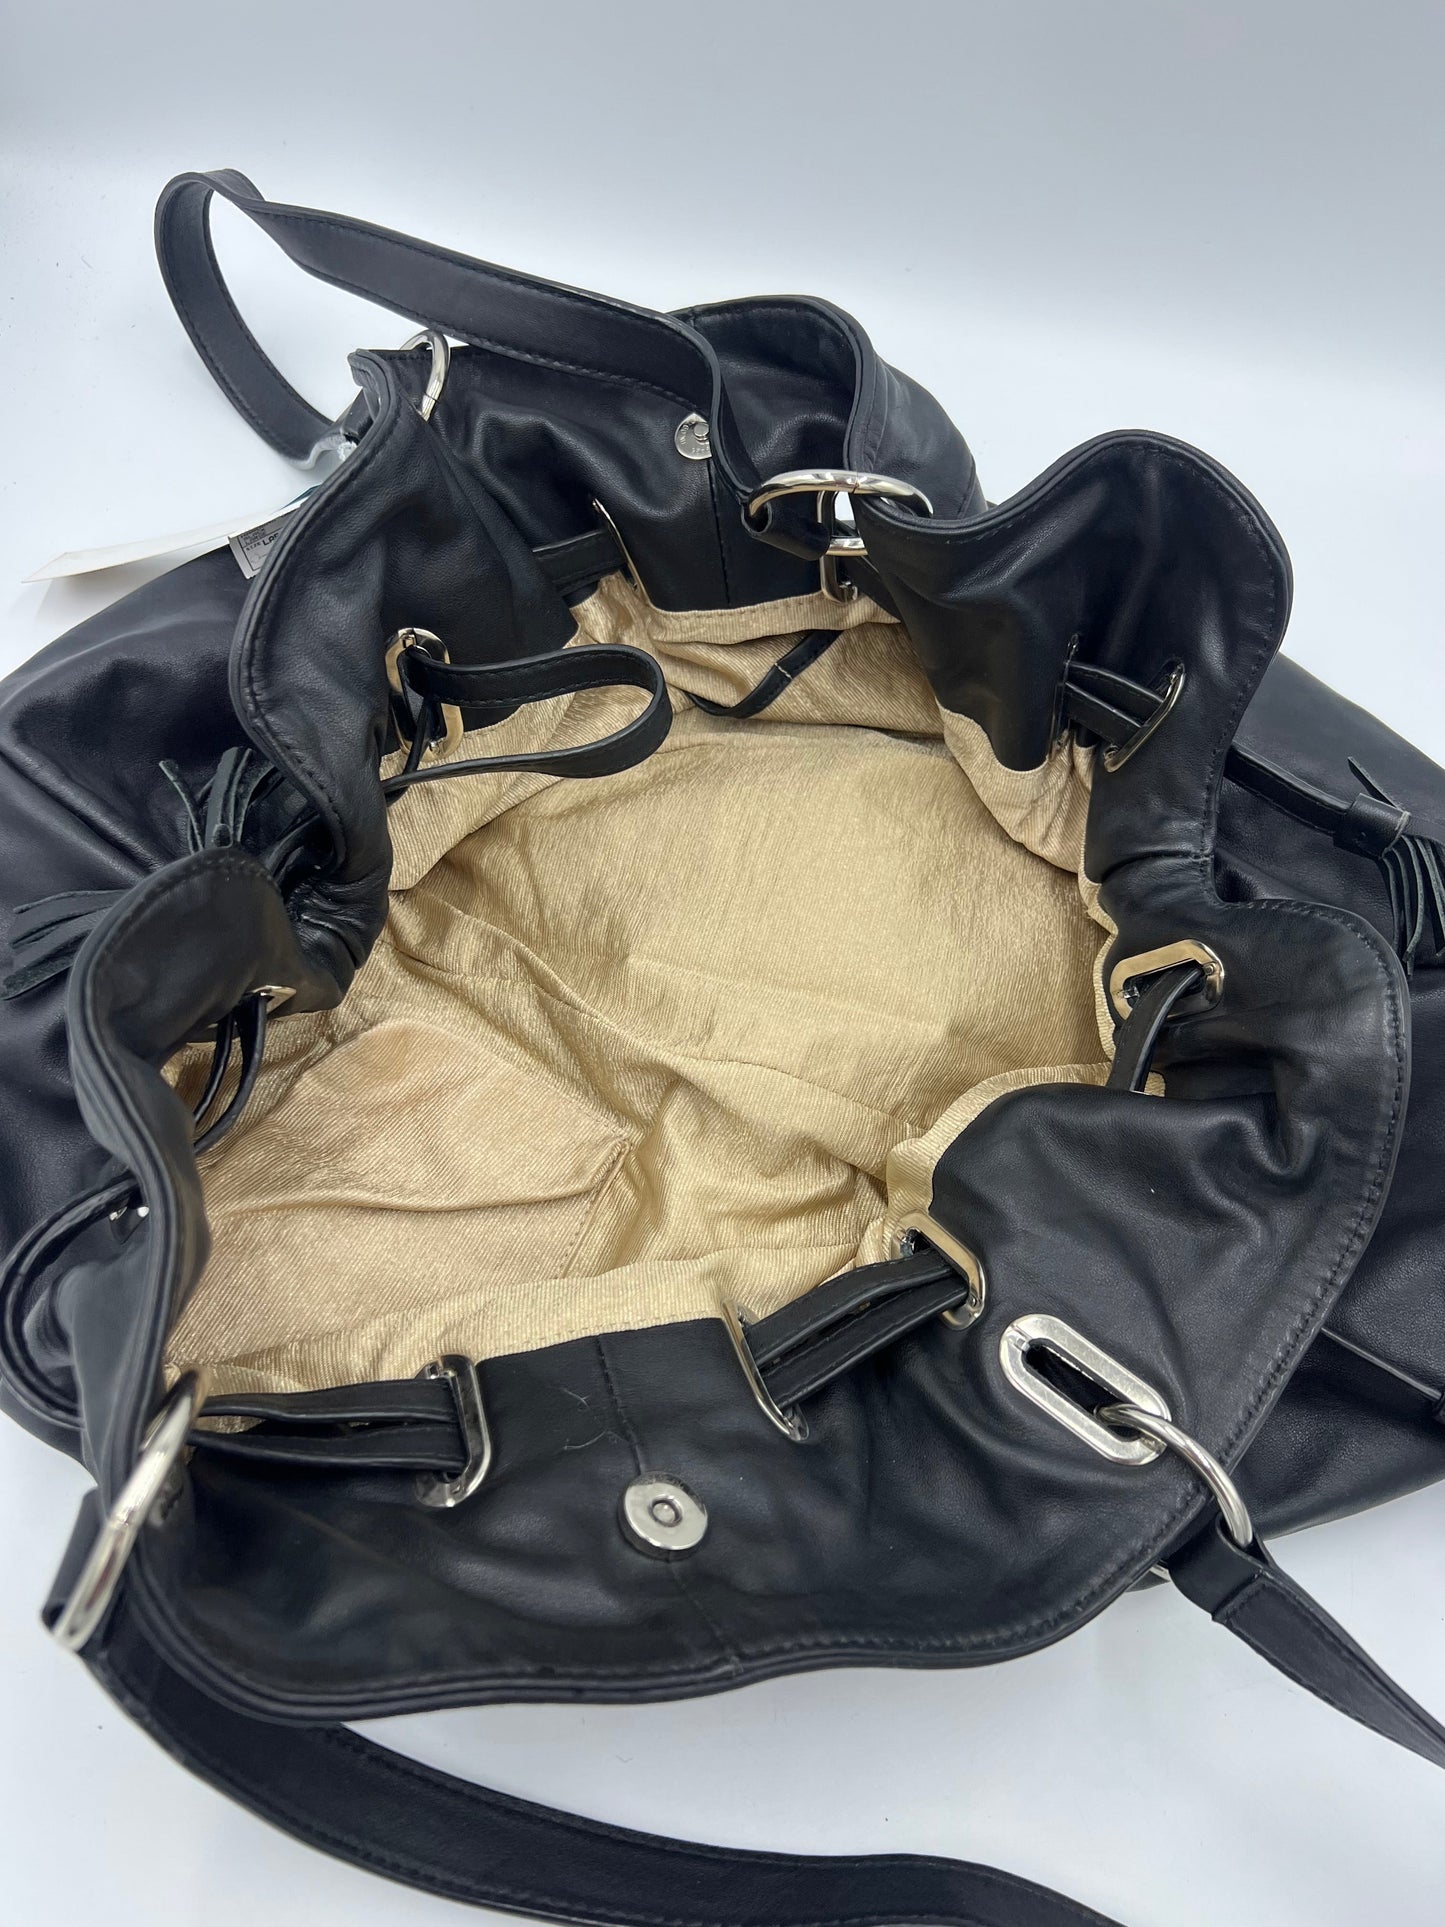 Handbag Designer By Donald Pliner  Size: Large